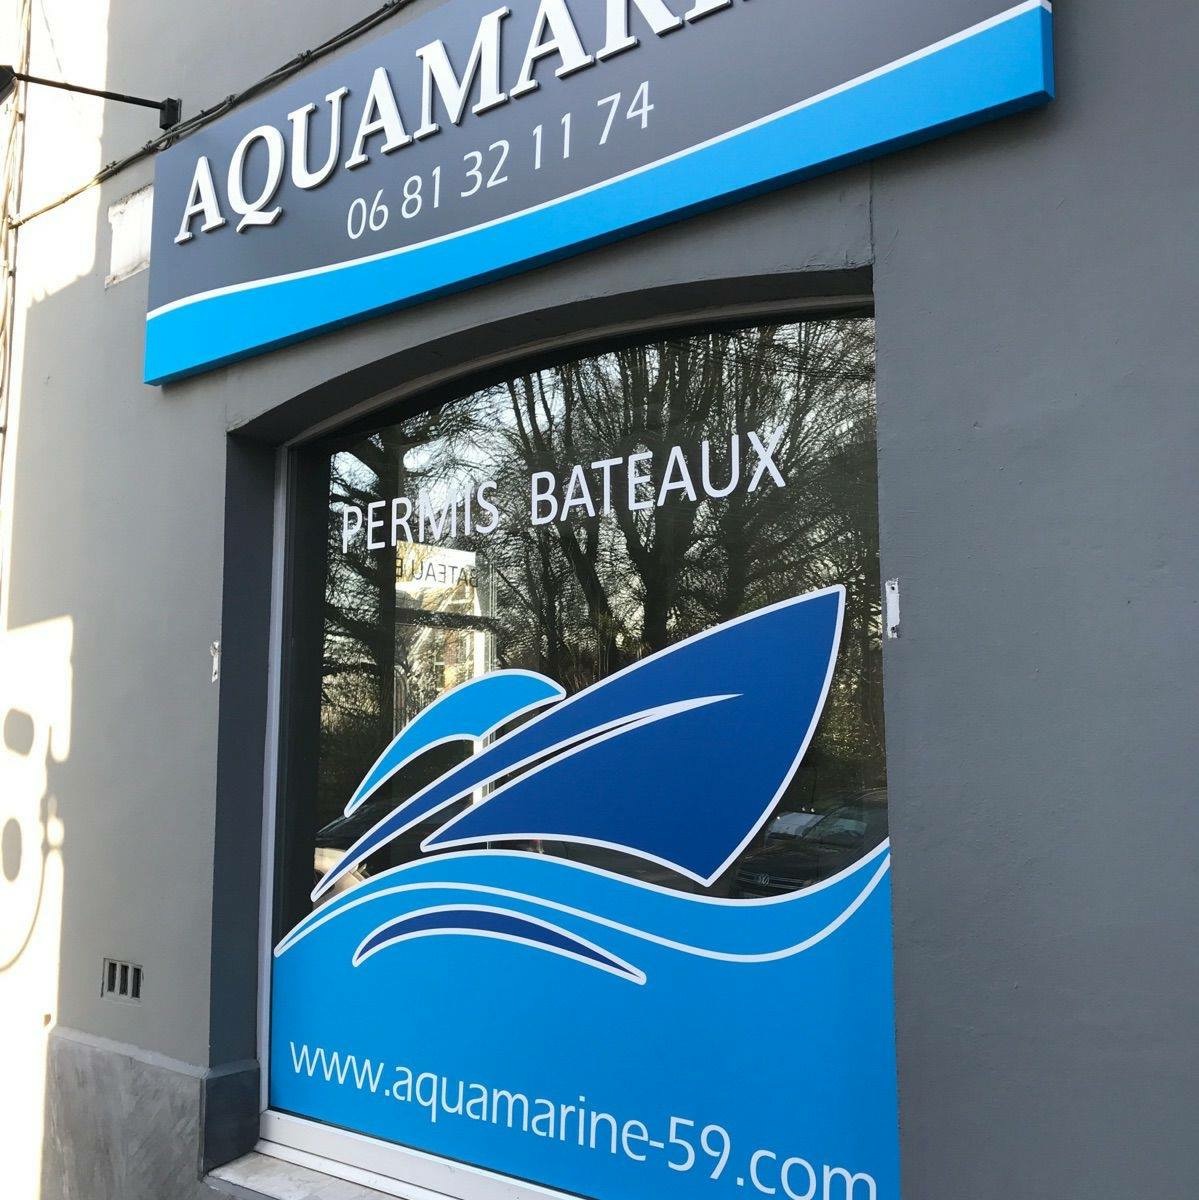 Logo Aquamarine